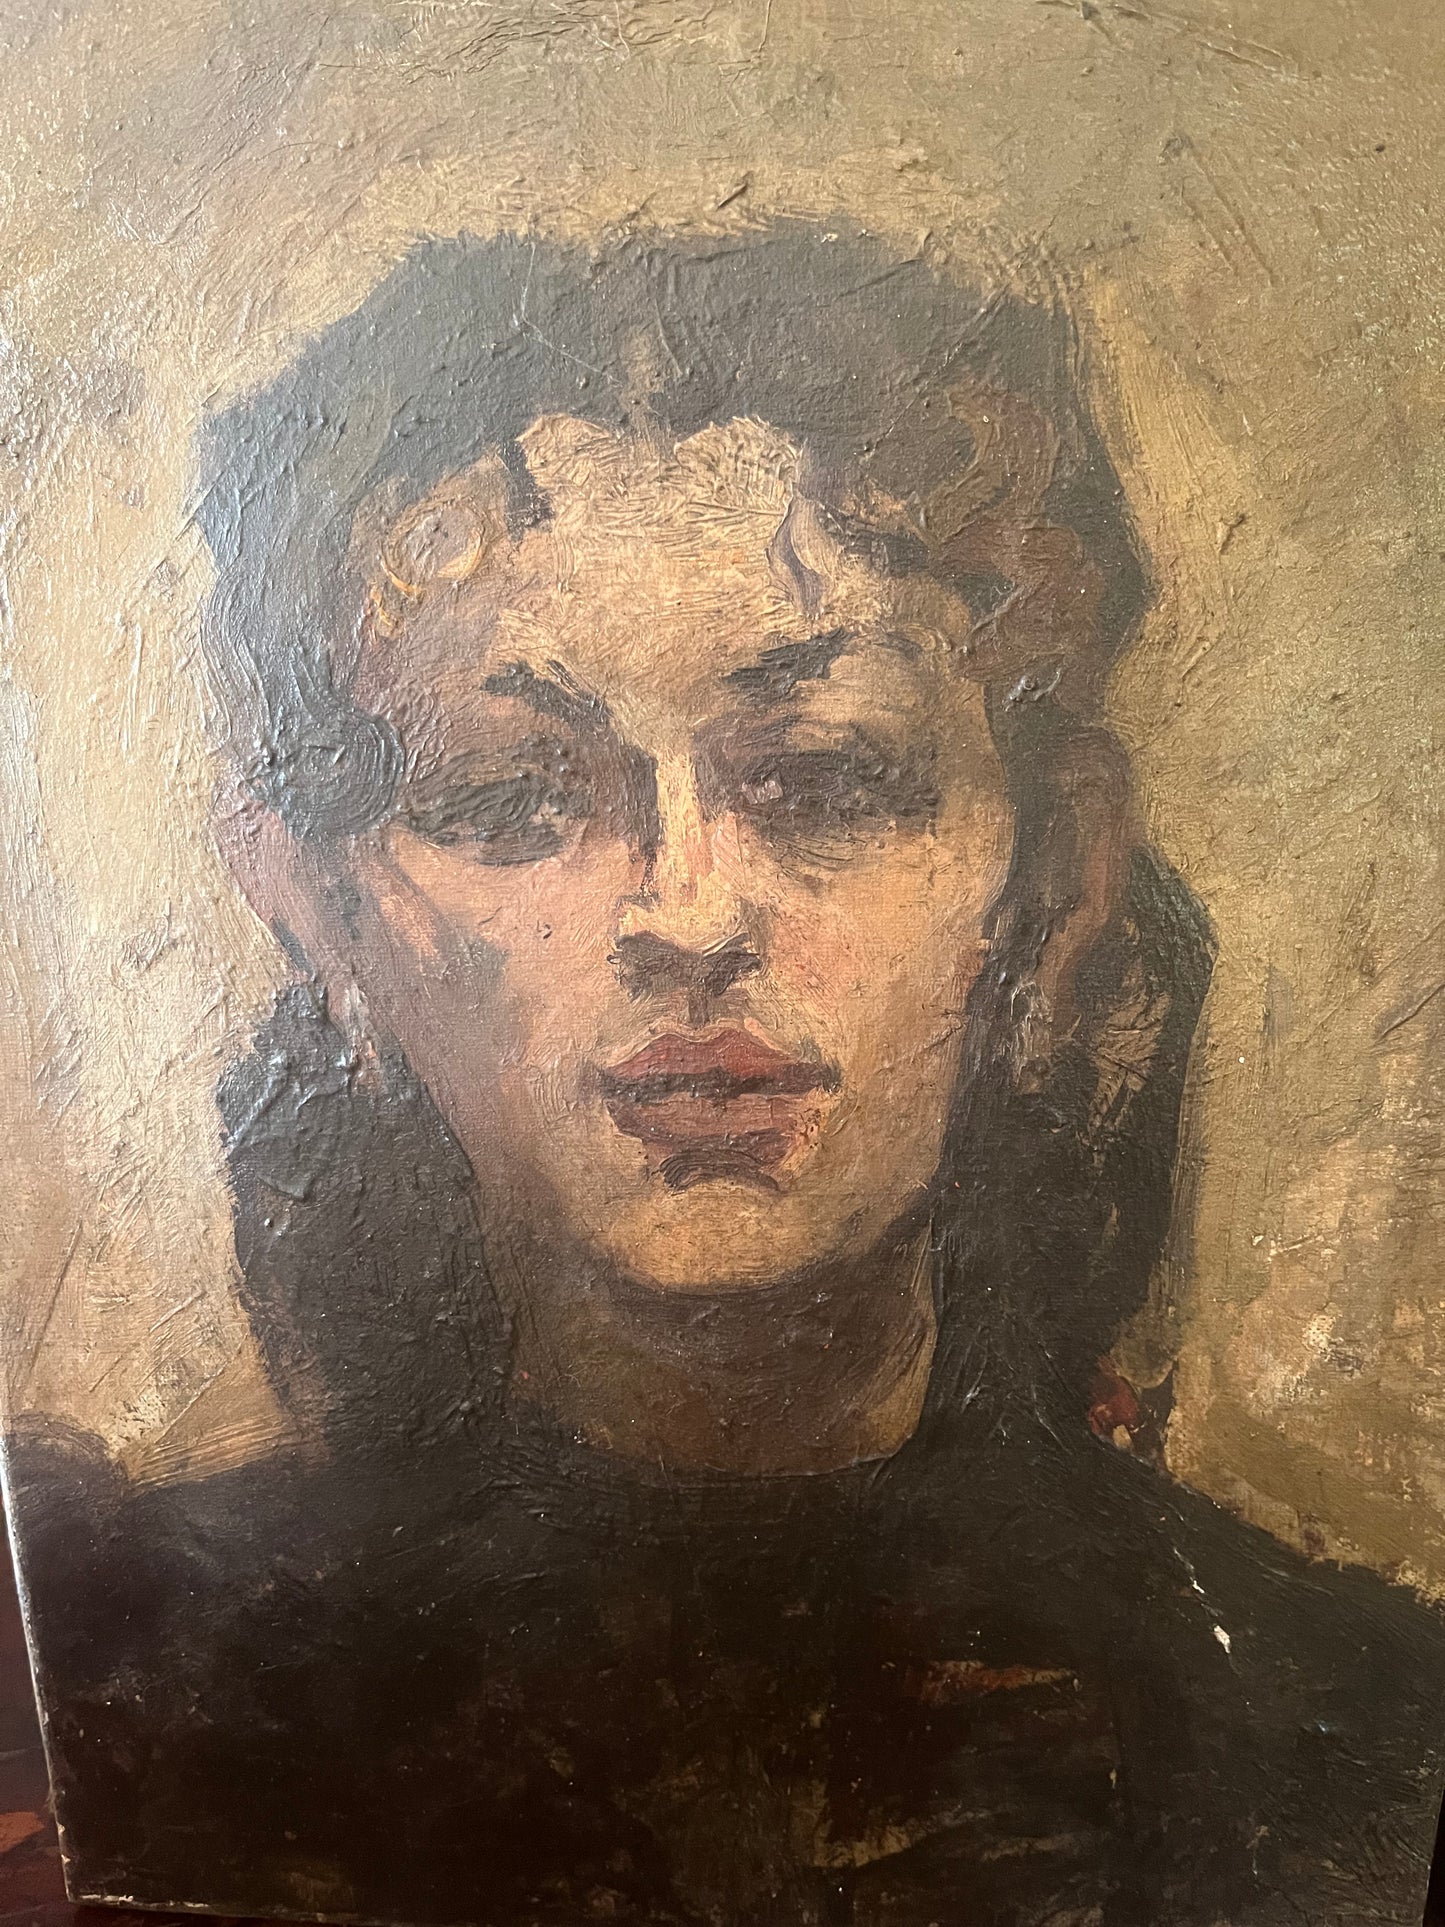 Antique female portrait